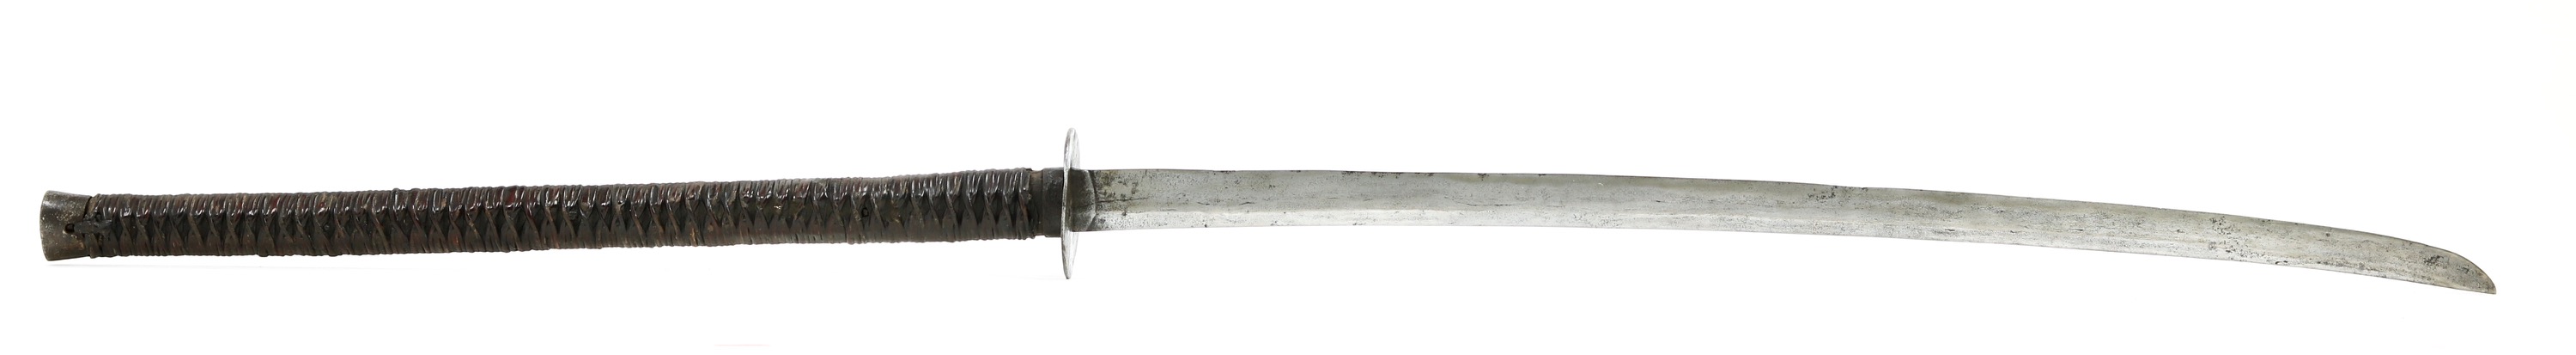 Chinese long saber